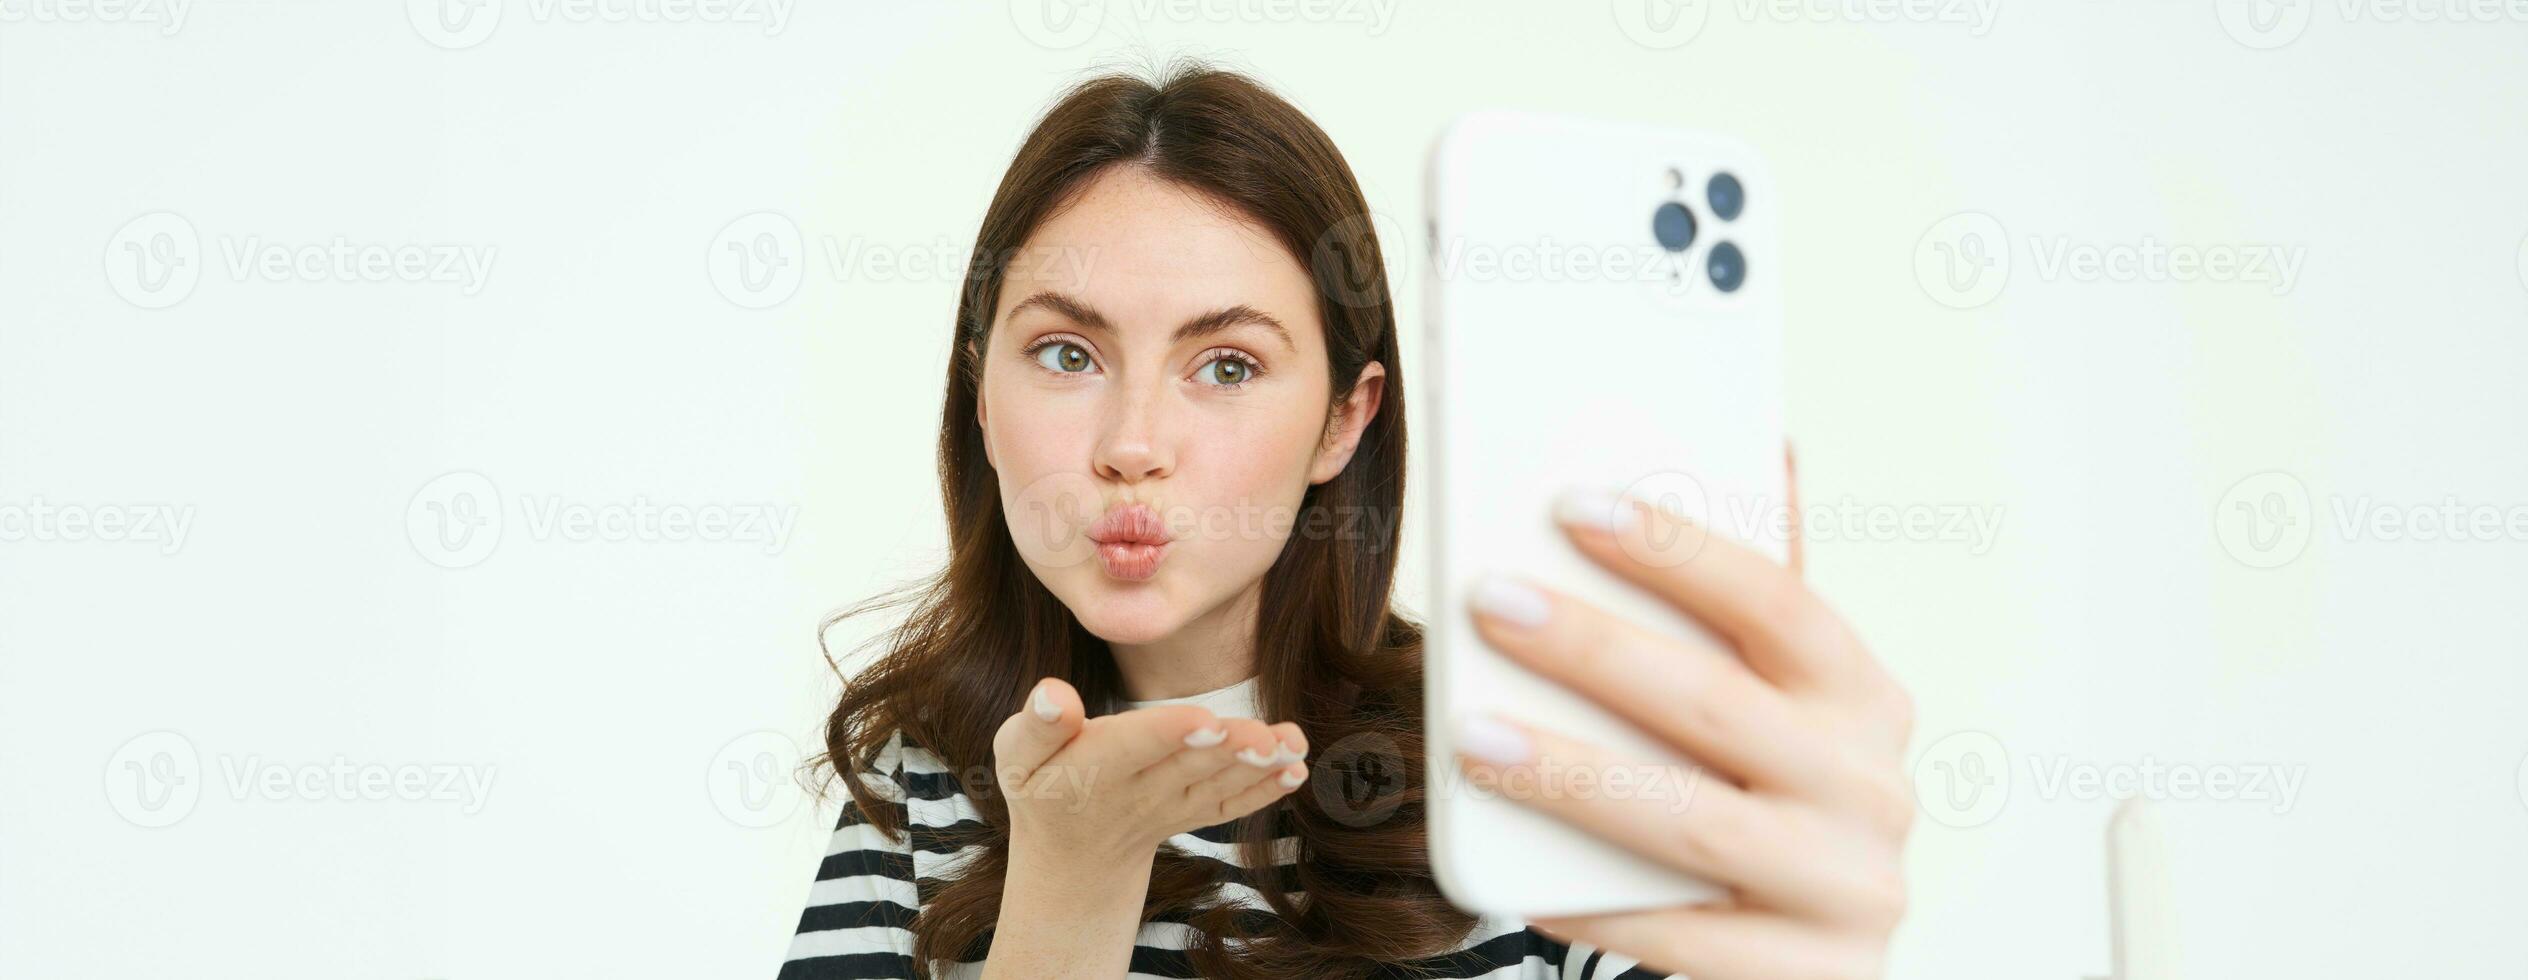 retrato do jovem europeu mulher levando selfie em Smartphone, segurando branco Móvel telefone e posando para fotos, isolado contra branco fundo foto